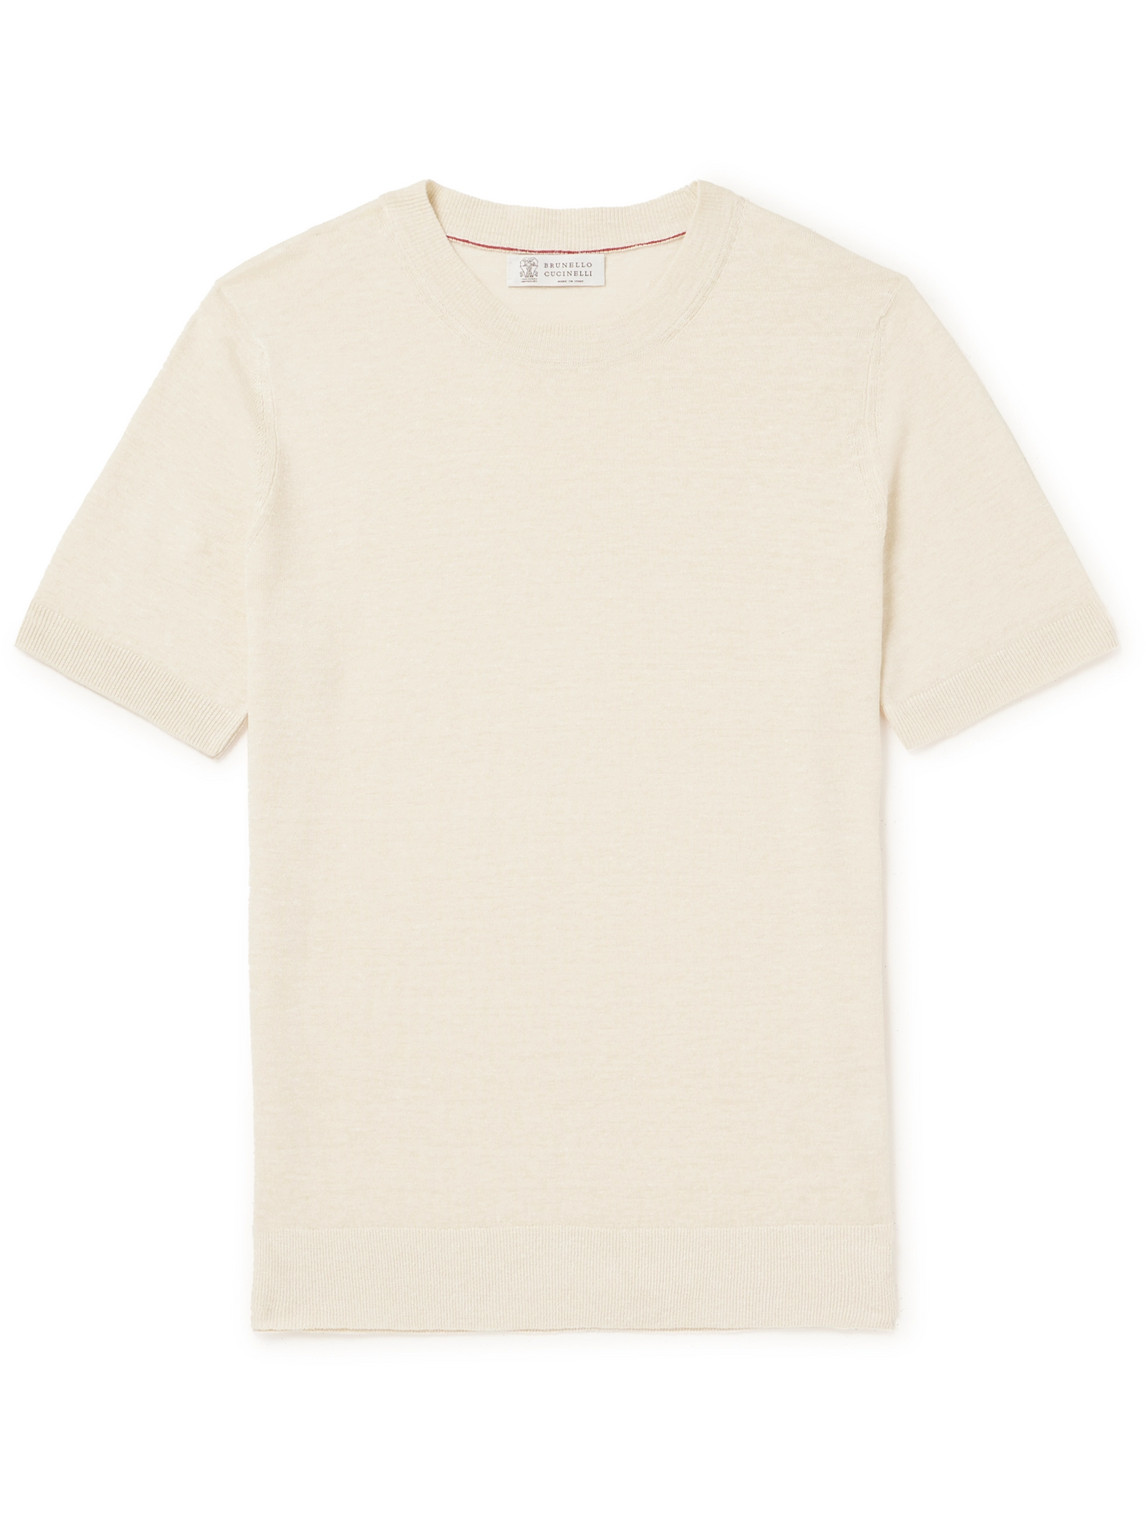 Brunello Cucinelli - Linen and Cotton-Blend Jersey T-Shirt - Men - Neutrals - IT 54 von Brunello Cucinelli